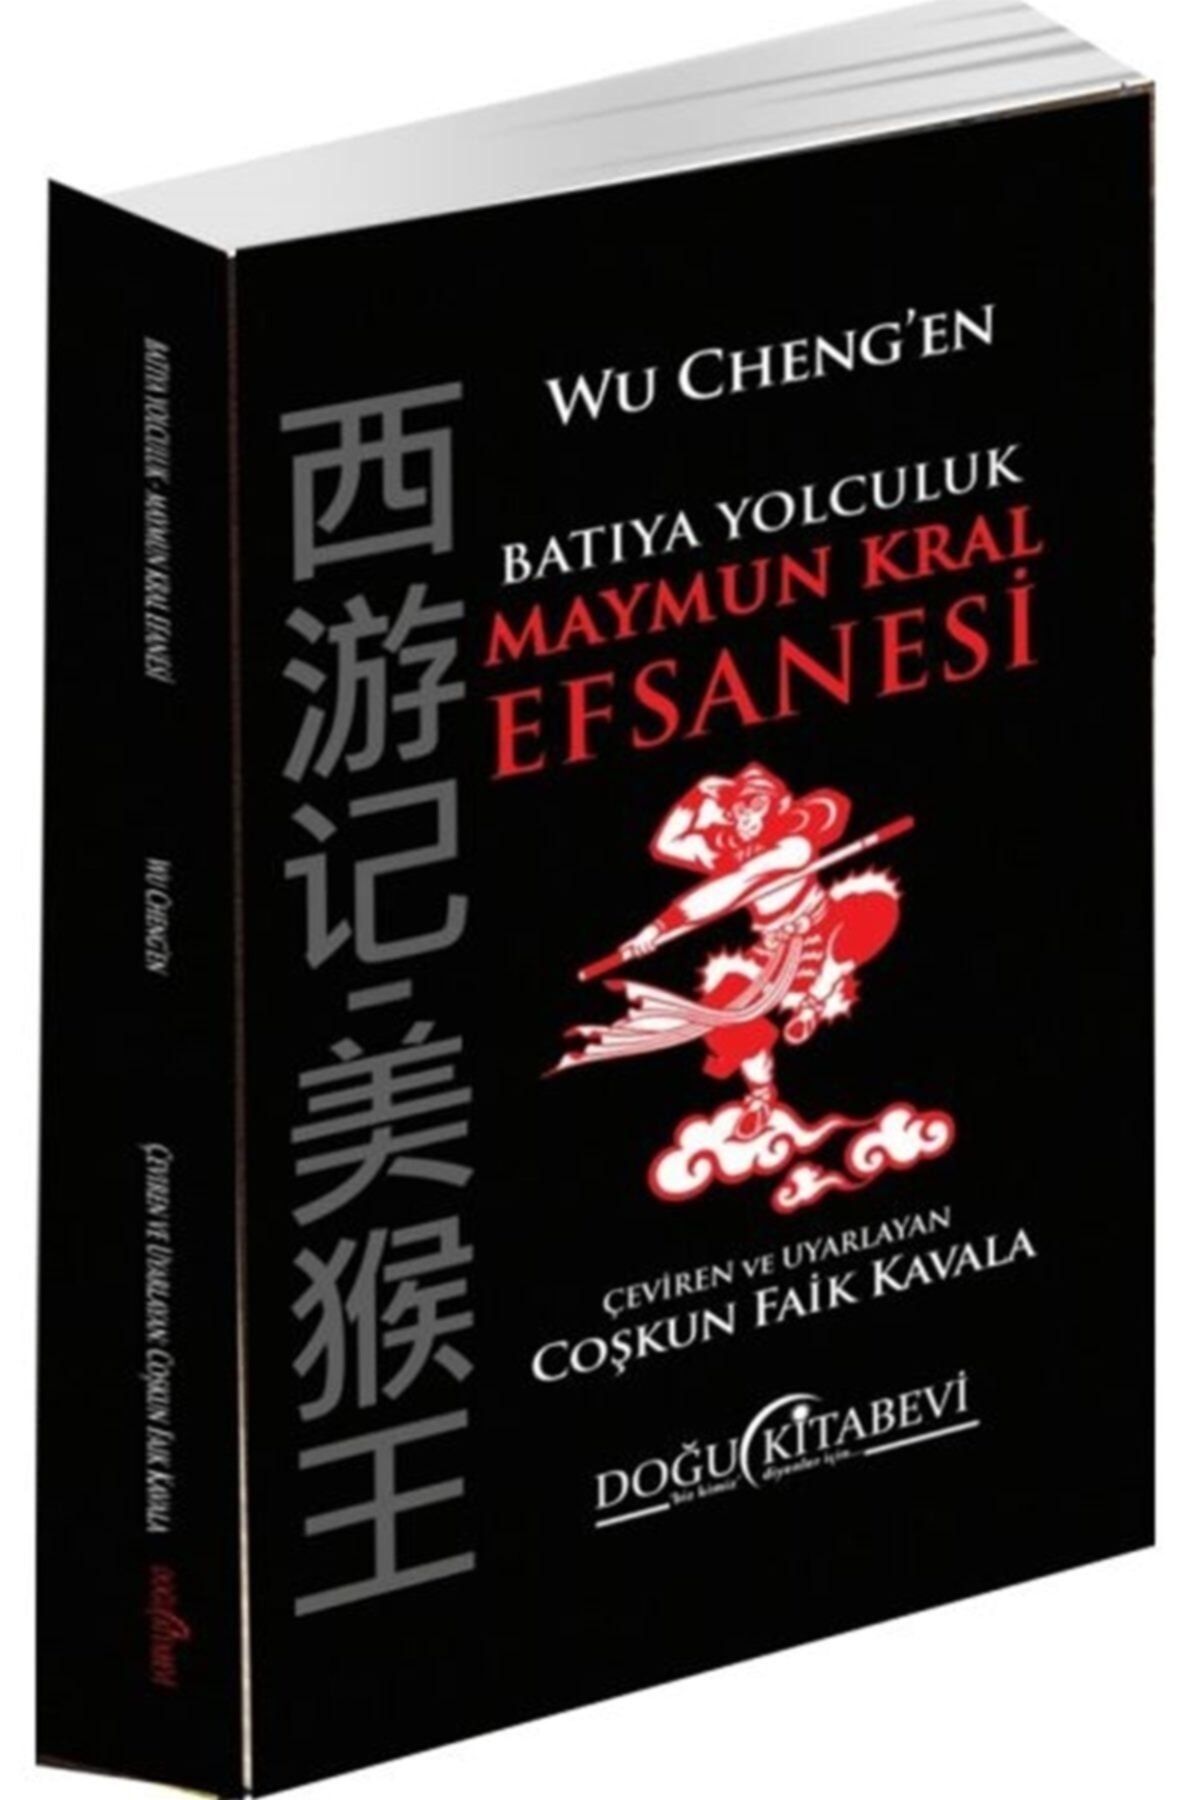 Doğu Kitabevi Batıya Yolculuk Maymun Kral Efsanesi - Wu Cheng-en